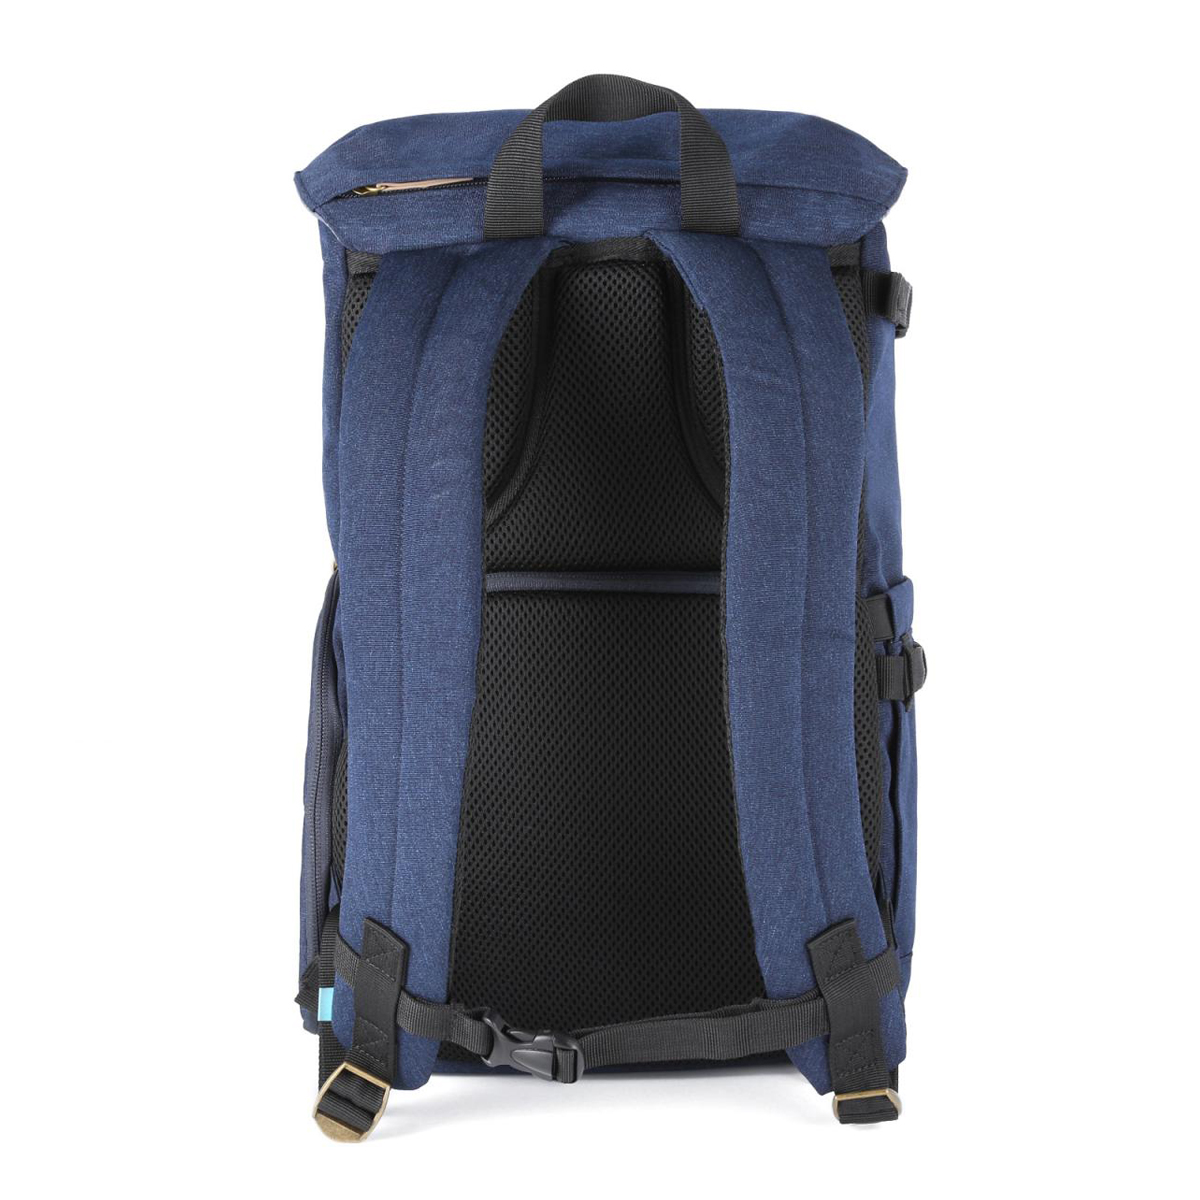 K&F Concept 13.066 DSLR Camera Backpack 